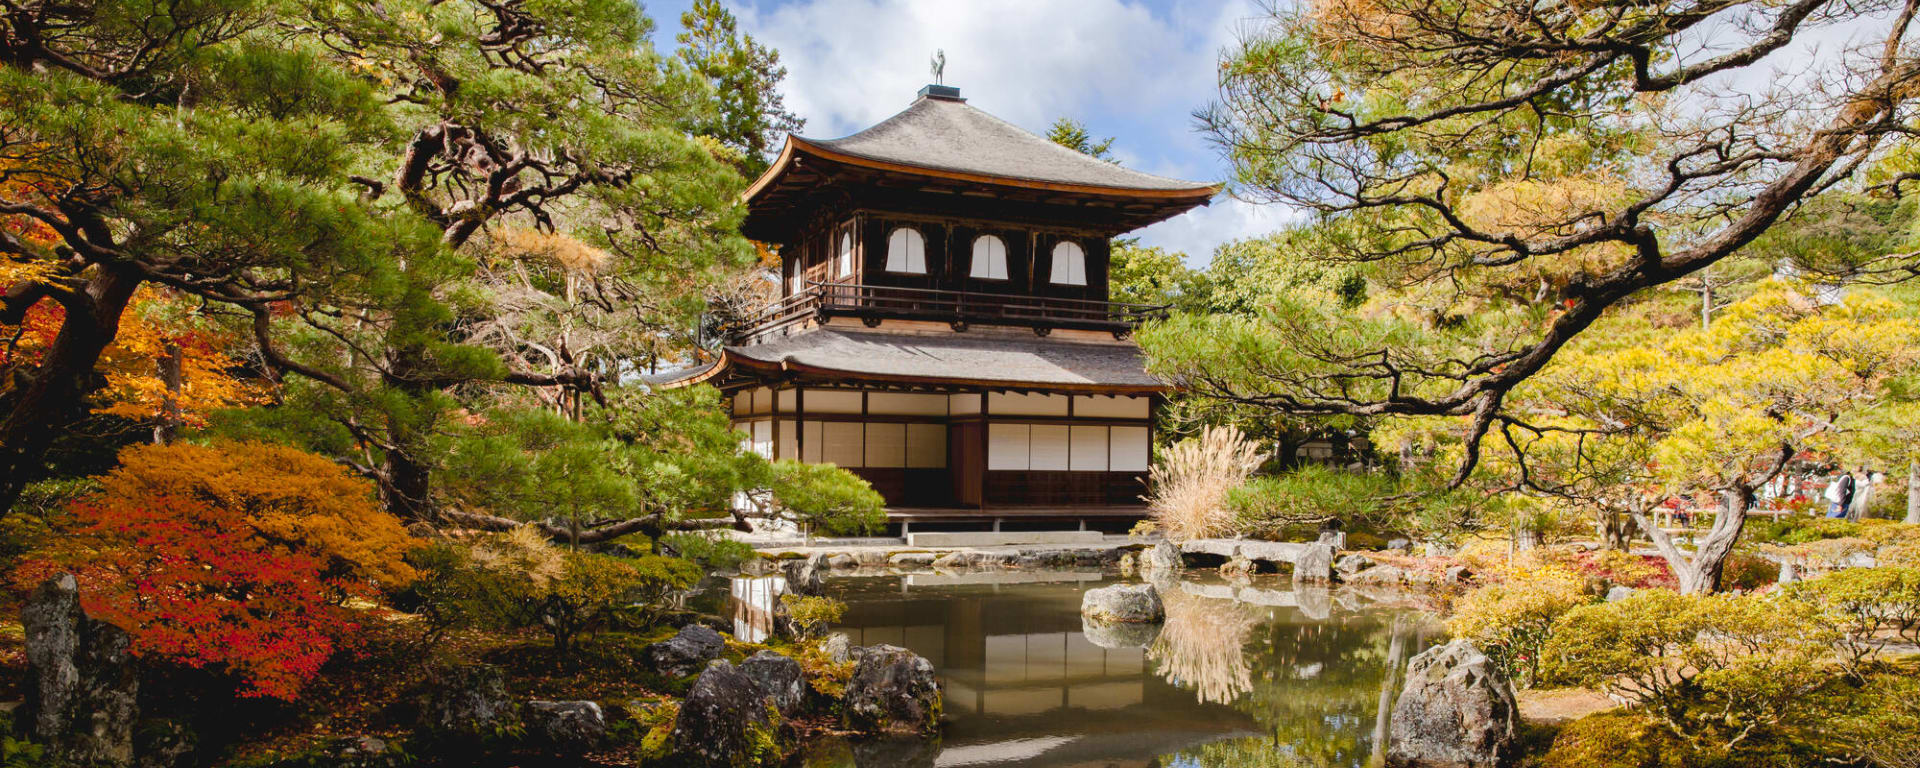 Stadtrundfahrt Kyoto vormittags, EN, Halbtägig: Japan Kyoto Tempel